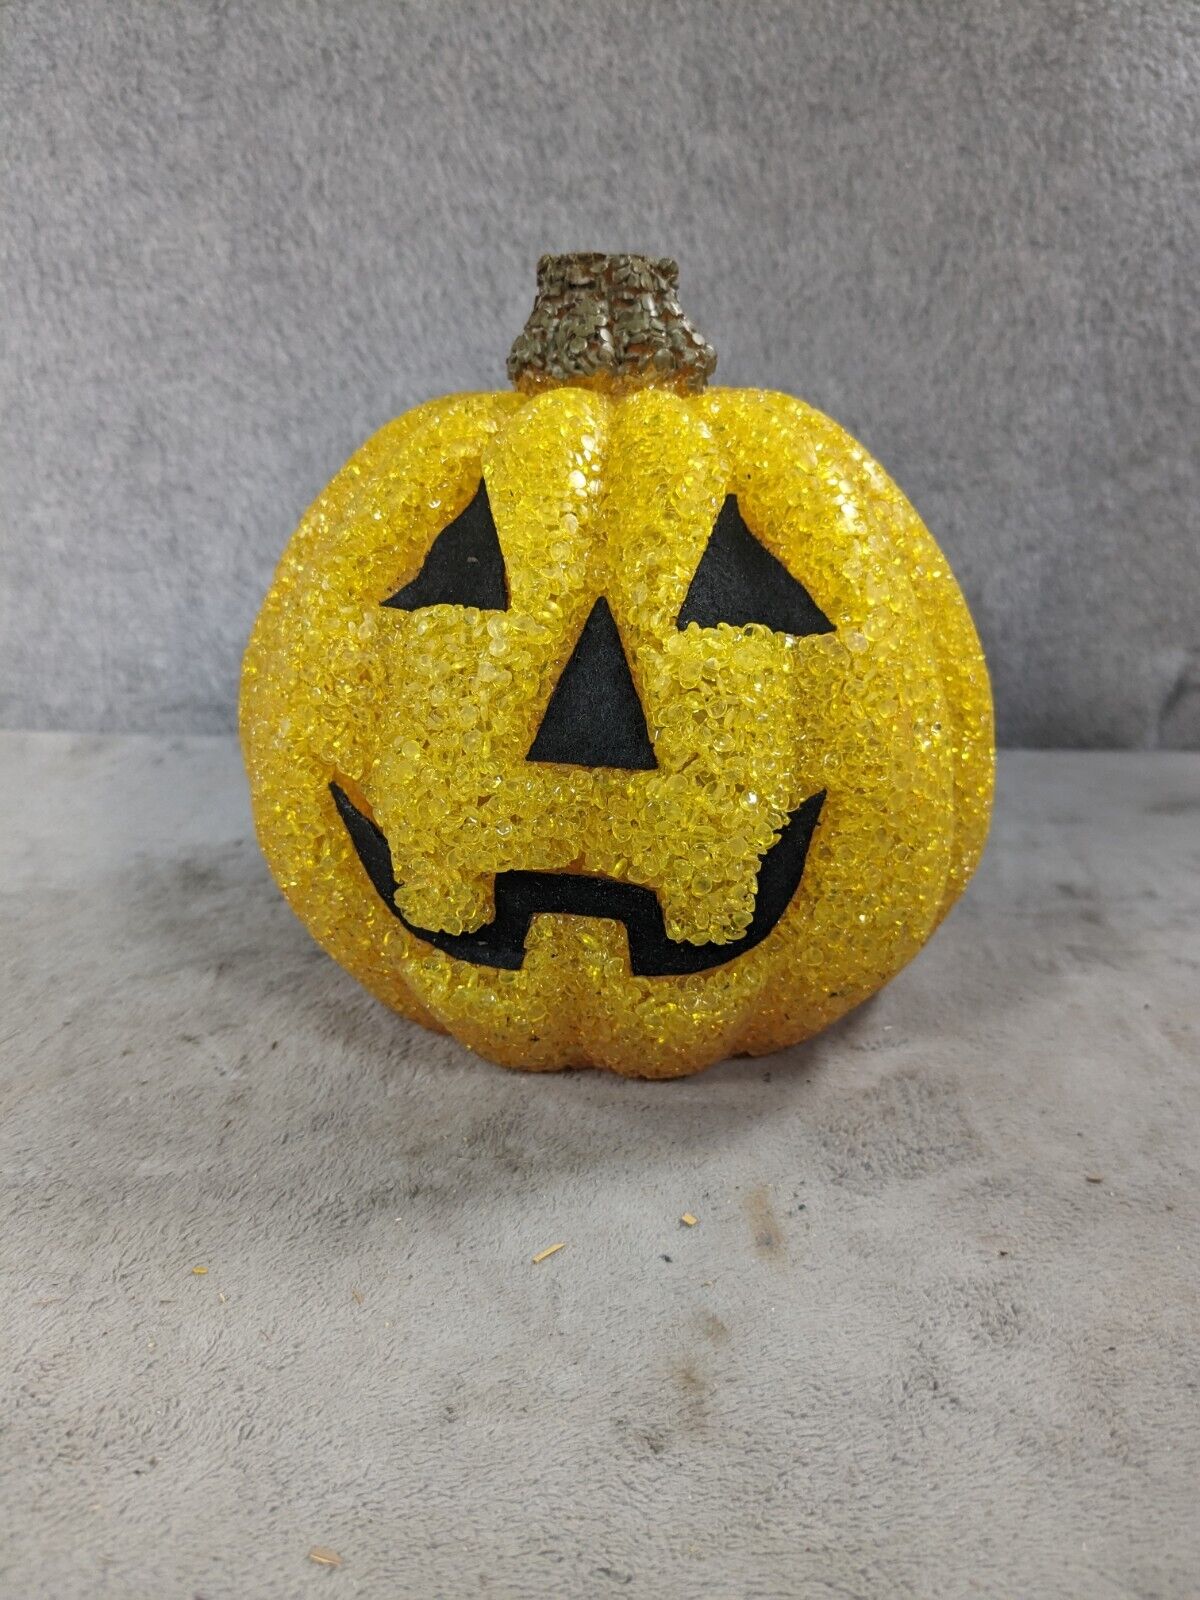 Vintage Melted Halloween Pumpkin Jack-O-Lantern - Missing Light Base